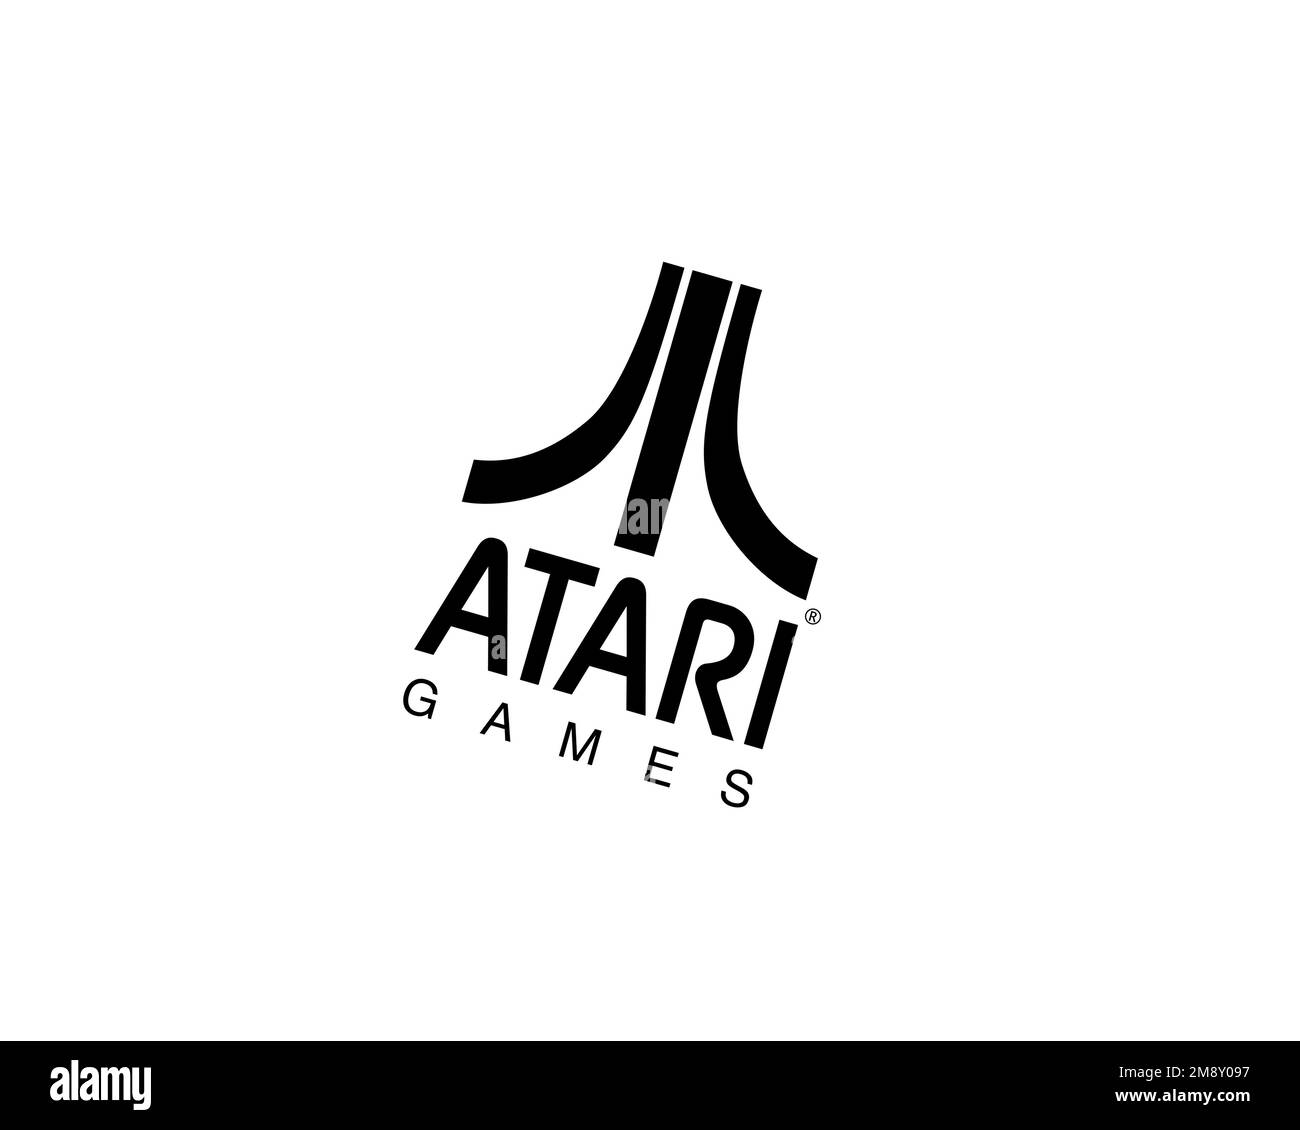 Atari Games, rotated logo, white background B Stock Photo